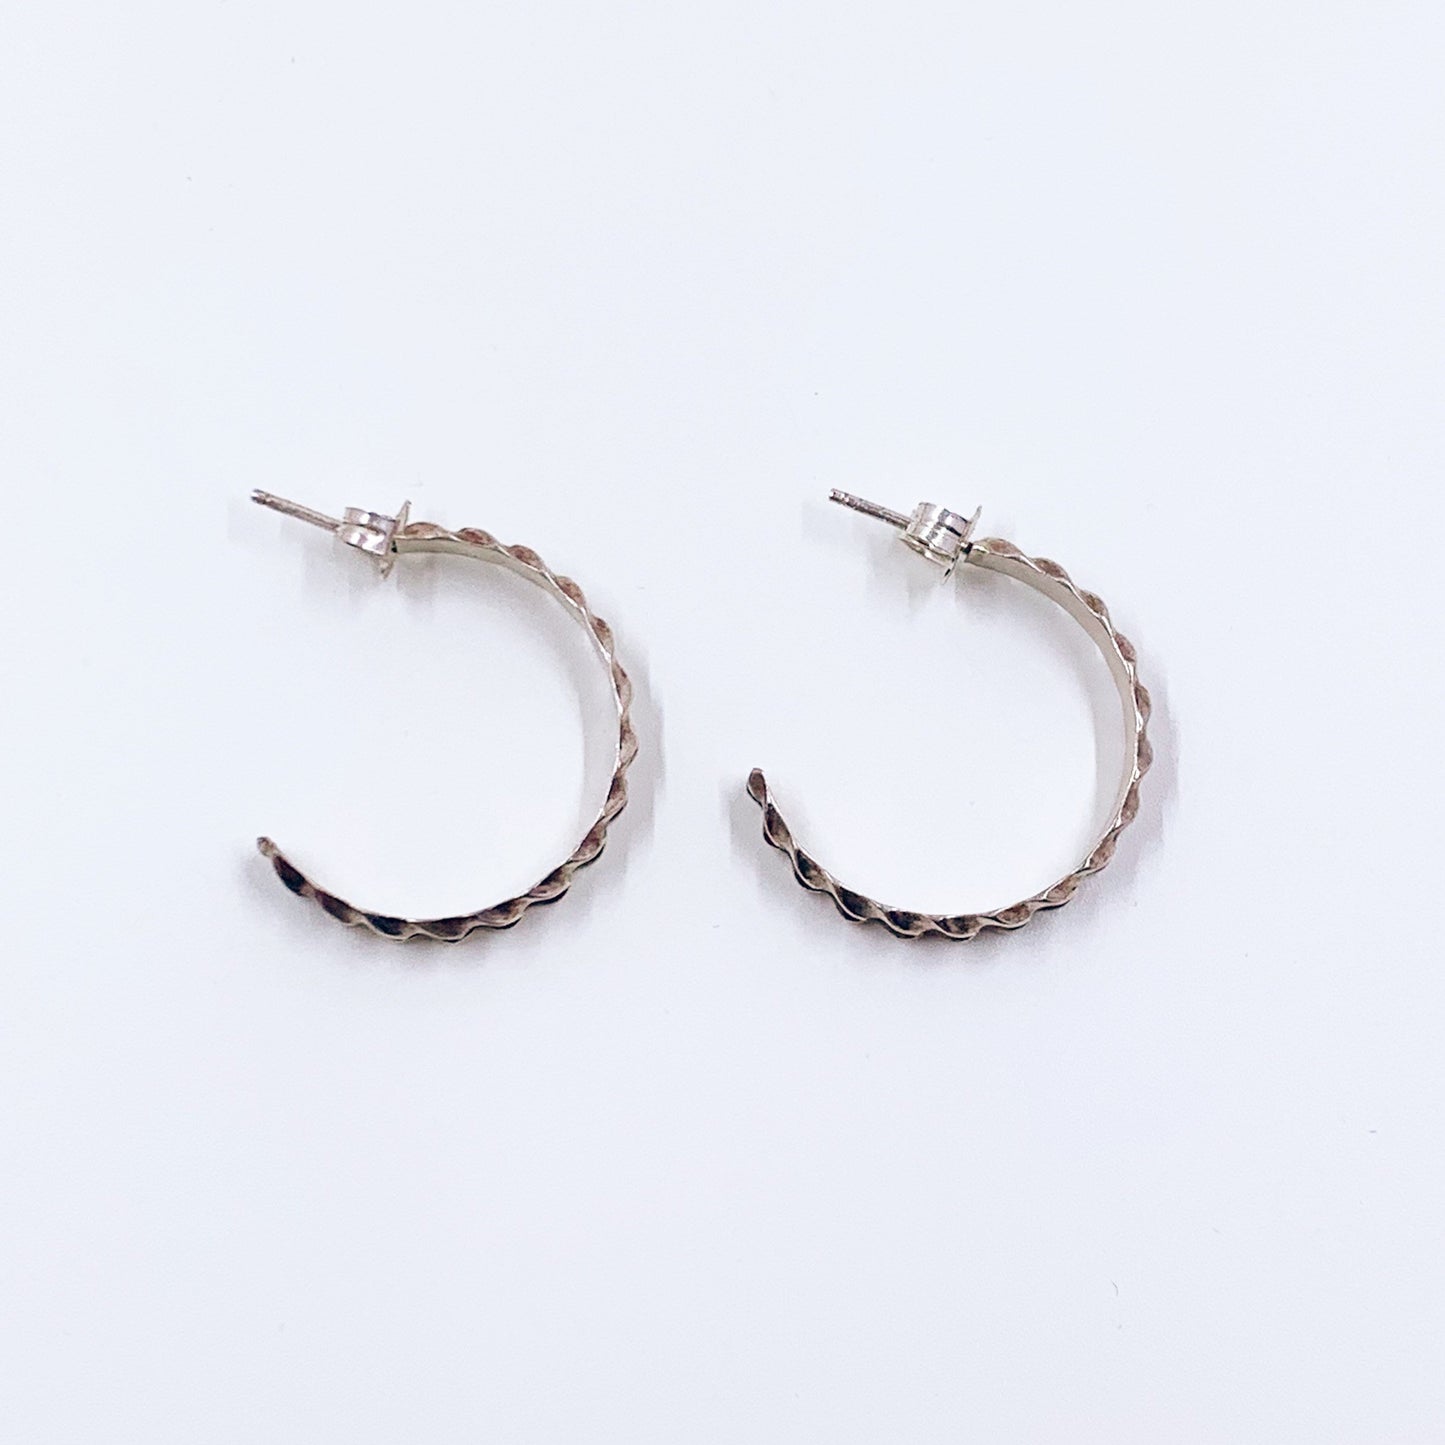 Vintage Silver Textured Hoop Earrings | Silver Braided Ridge Patterned Half Hoop Earrings